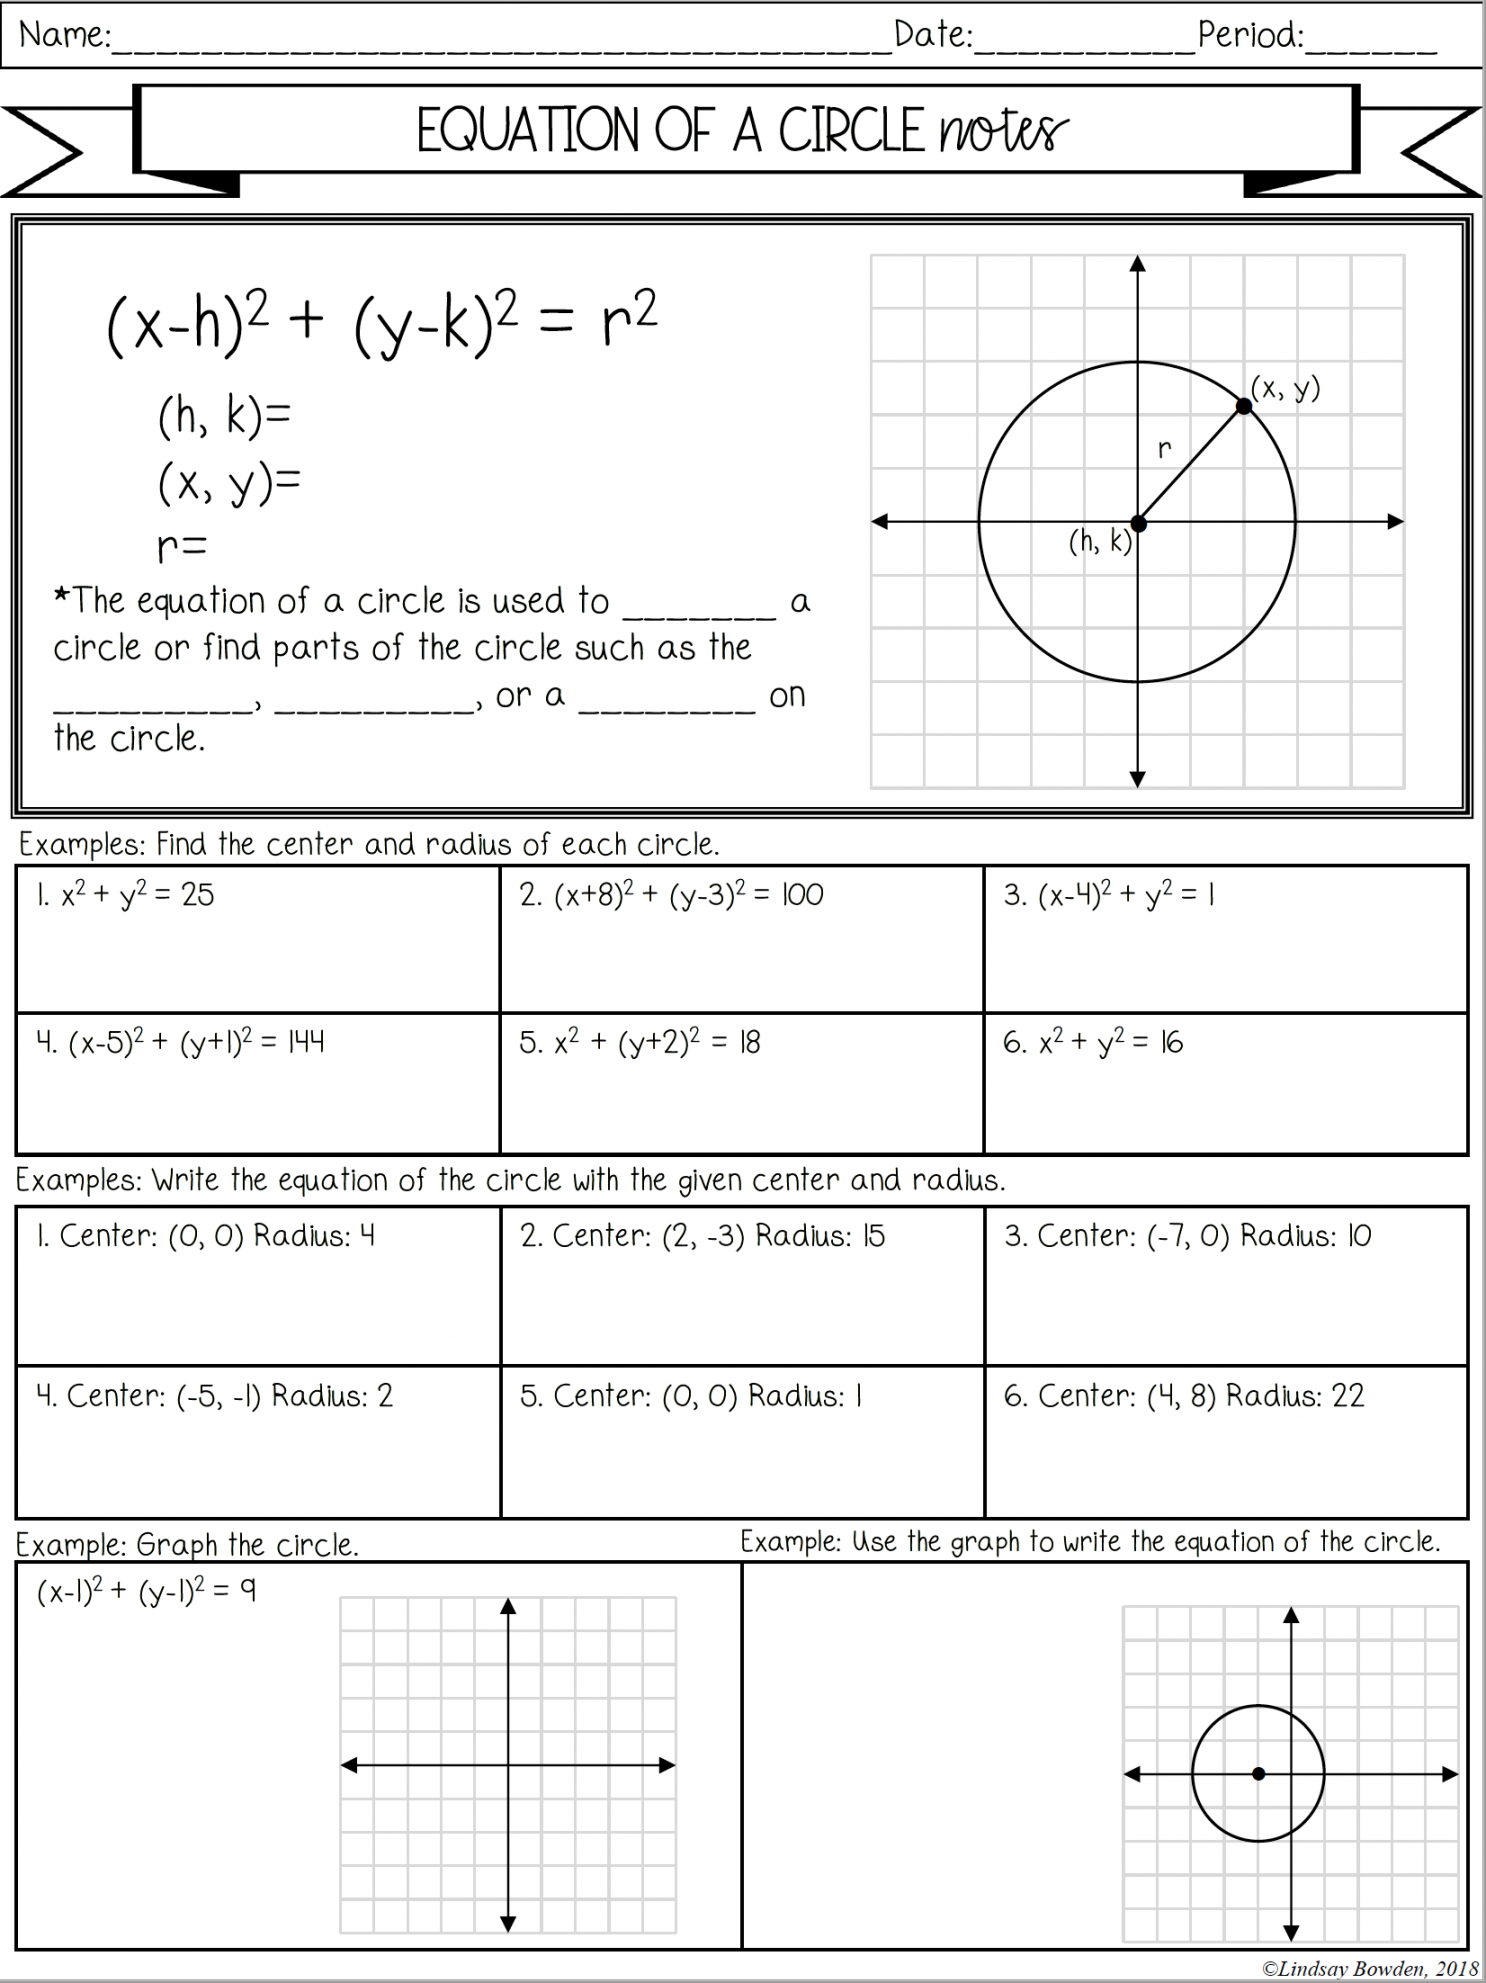 Equation of a Circle Notes and Worksheets - Lindsay Bowden